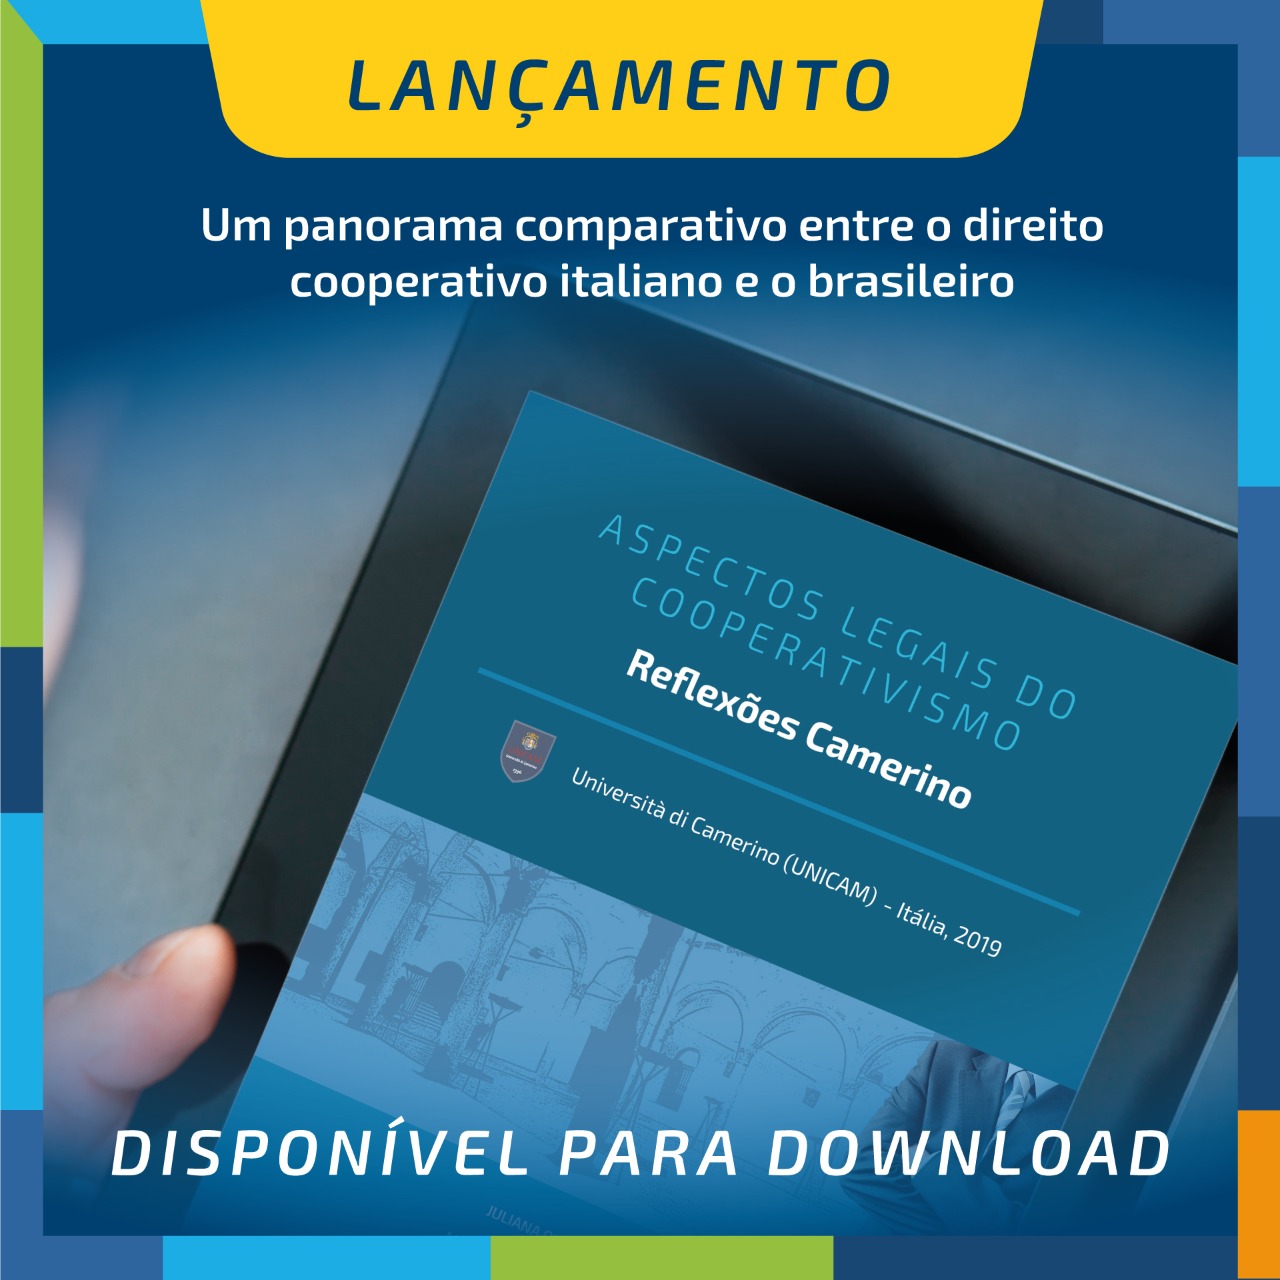 E-book “Aspectos Legais do Cooperativismo – Reflexões Camerino” apresenta panorama comparativo entre o direito cooperativo italiano e o brasileiro